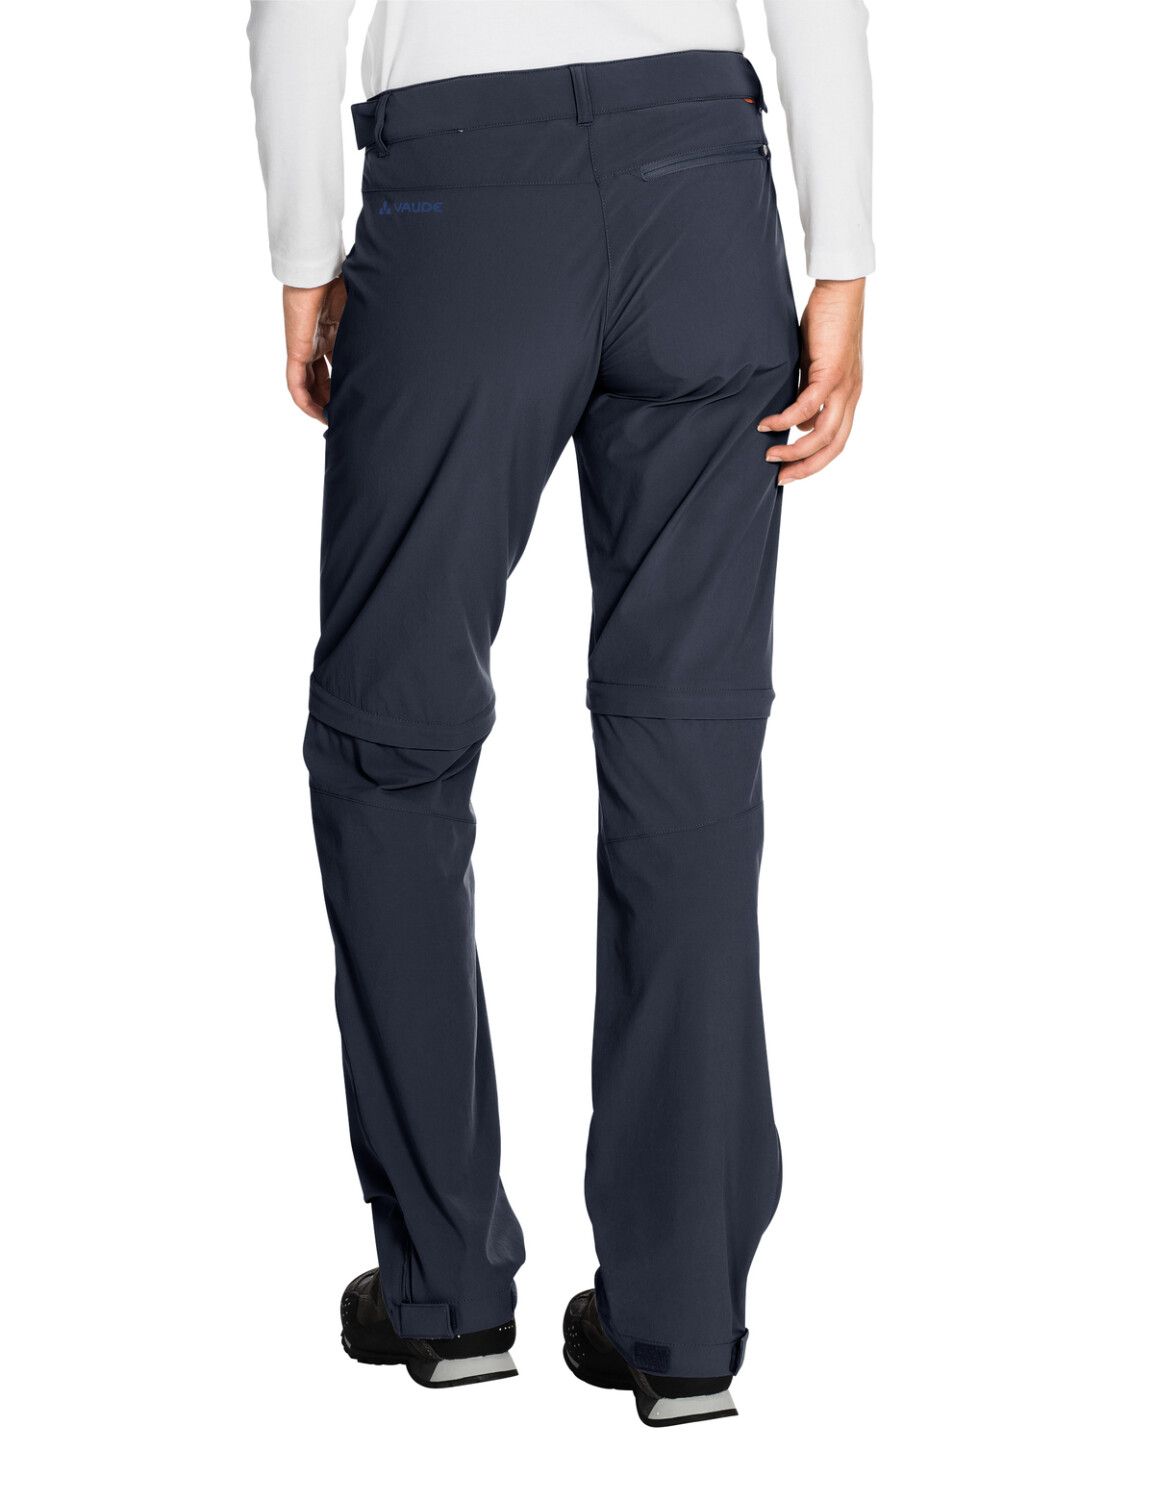 VAUDE Women's Farley Stretch ZO T-Zip Pants (Bild 61)